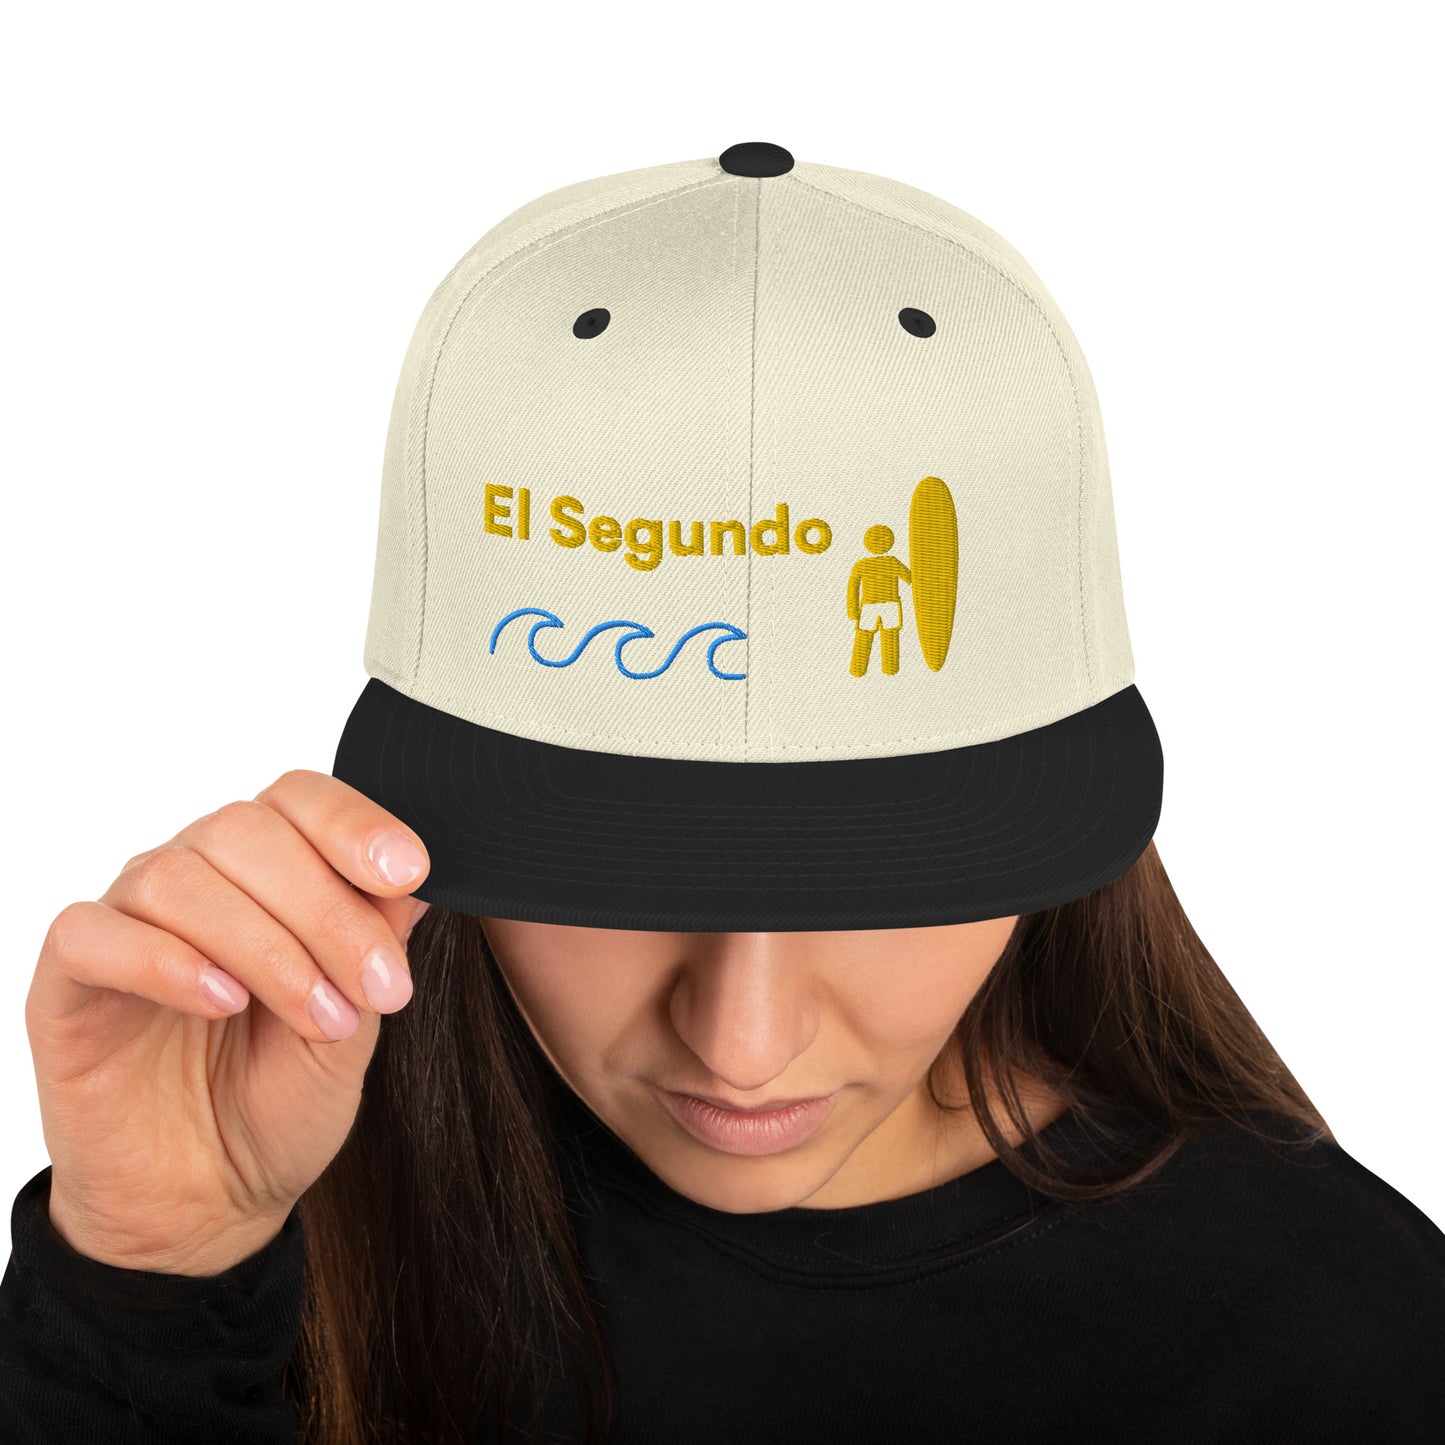 El Segundo - California - 90245 - Snapback Hat